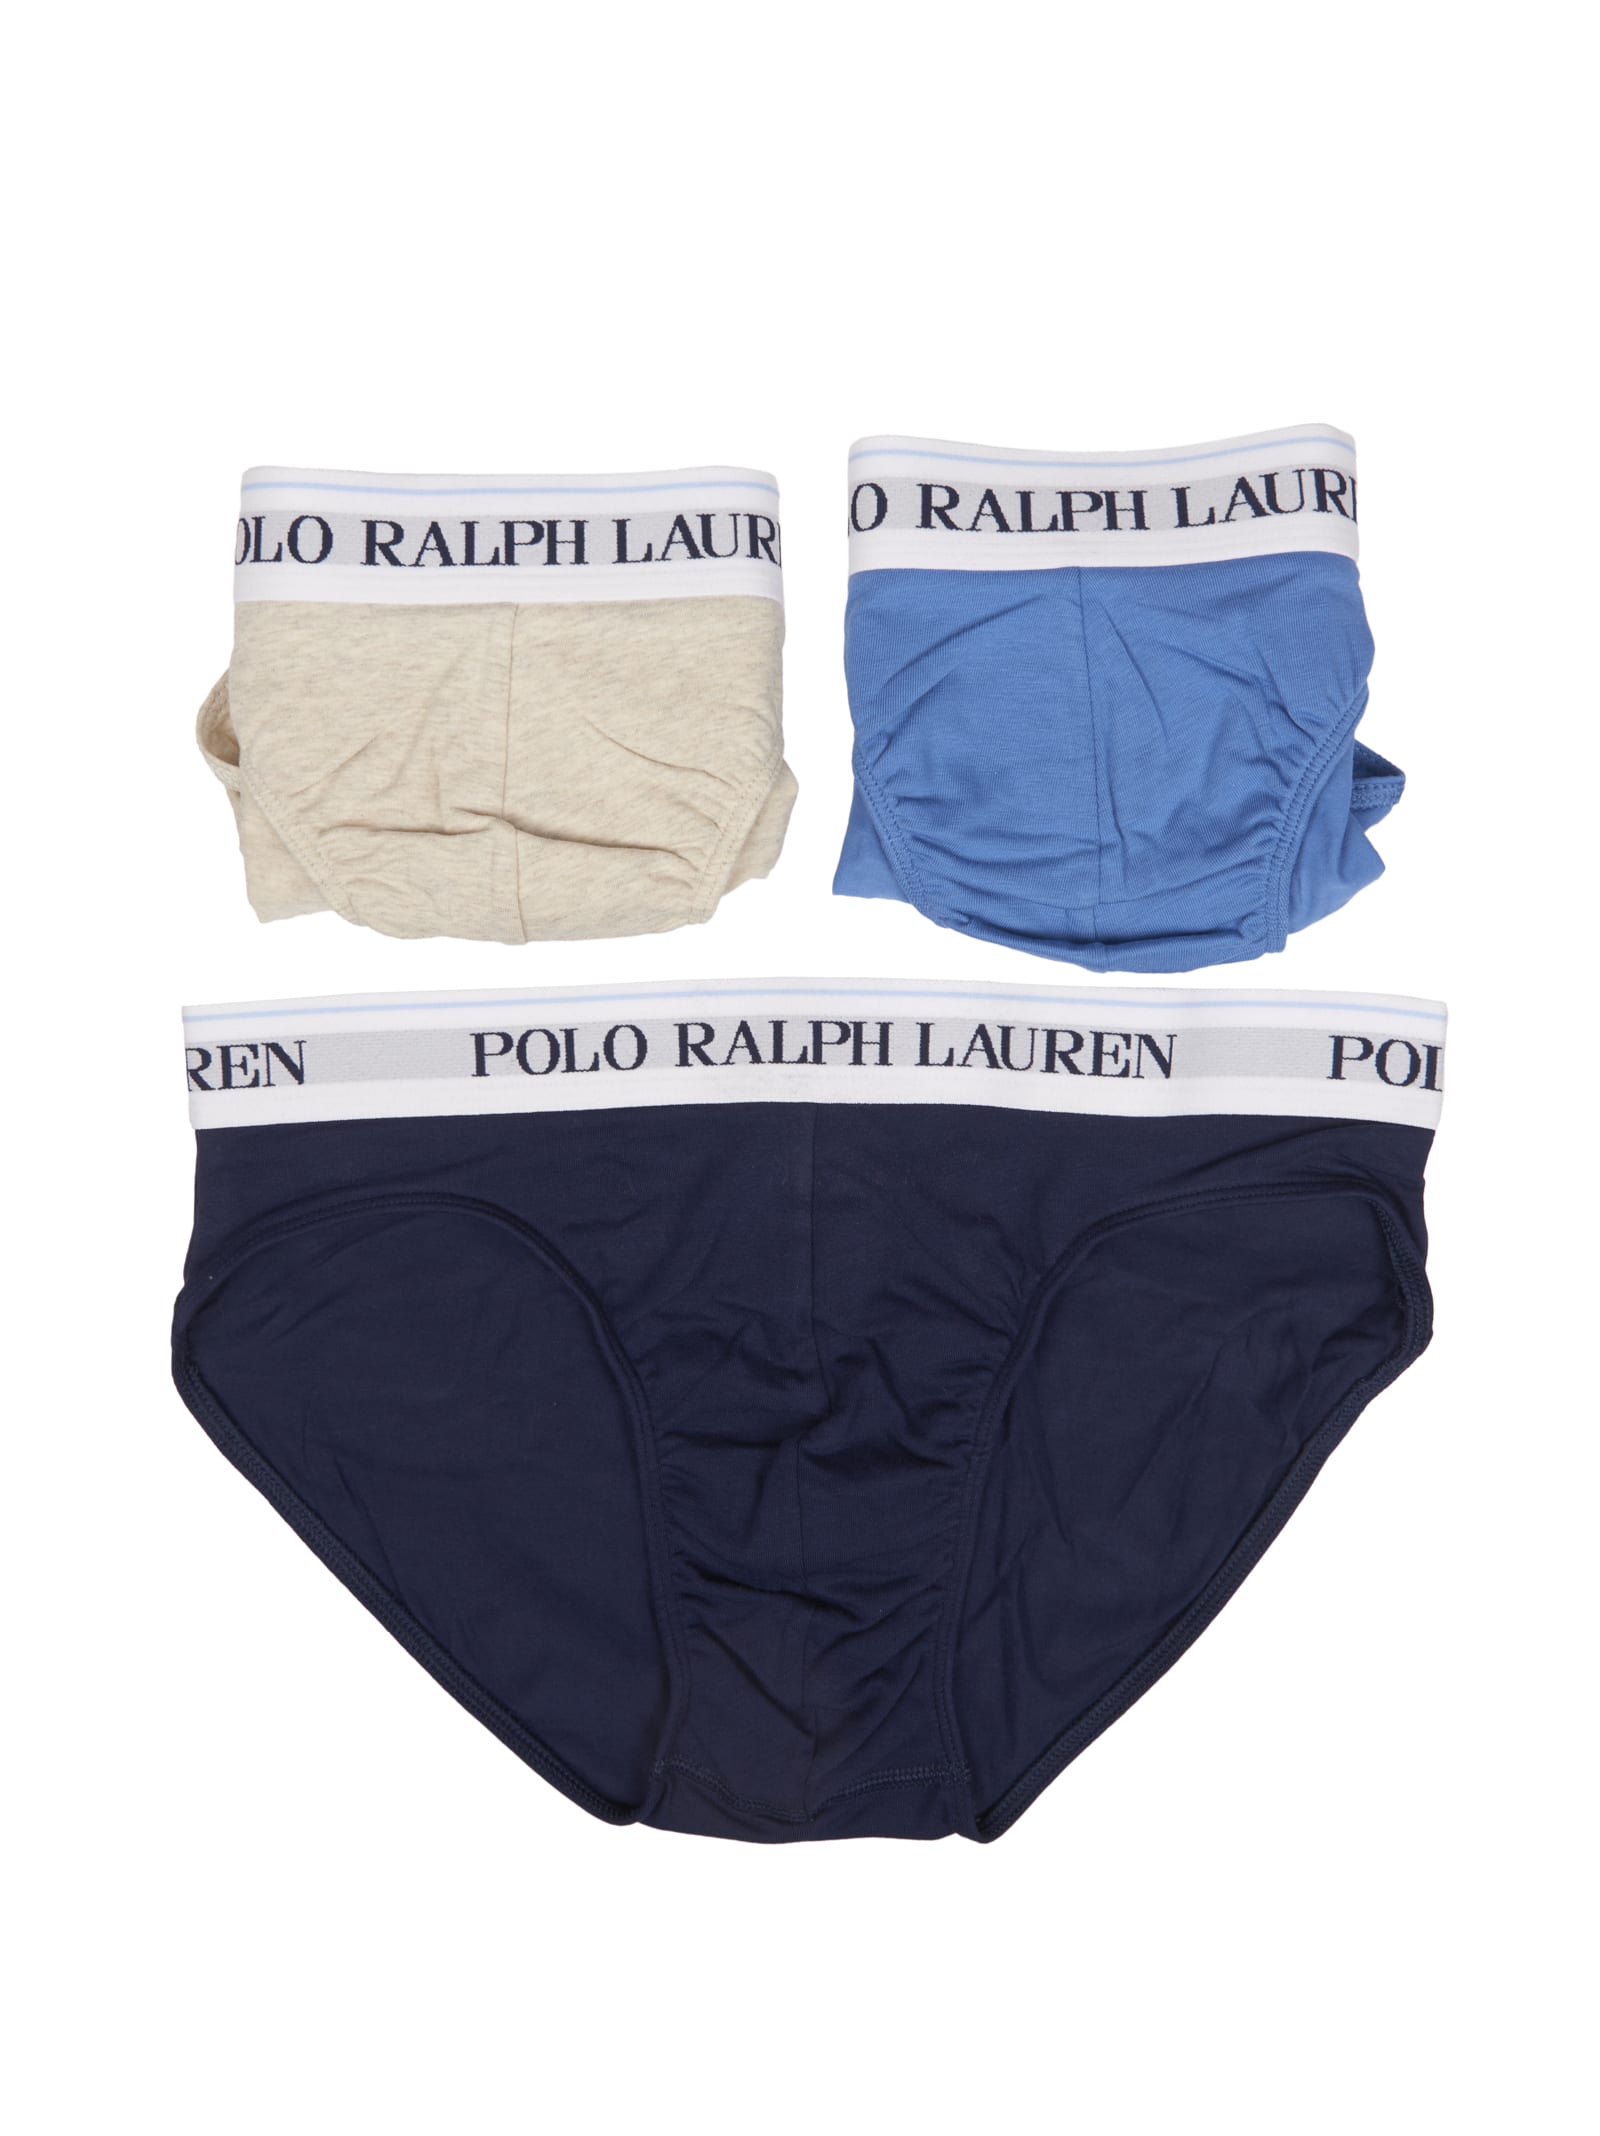 Polo Ralph Lauren Mens Exclusive Loungewear